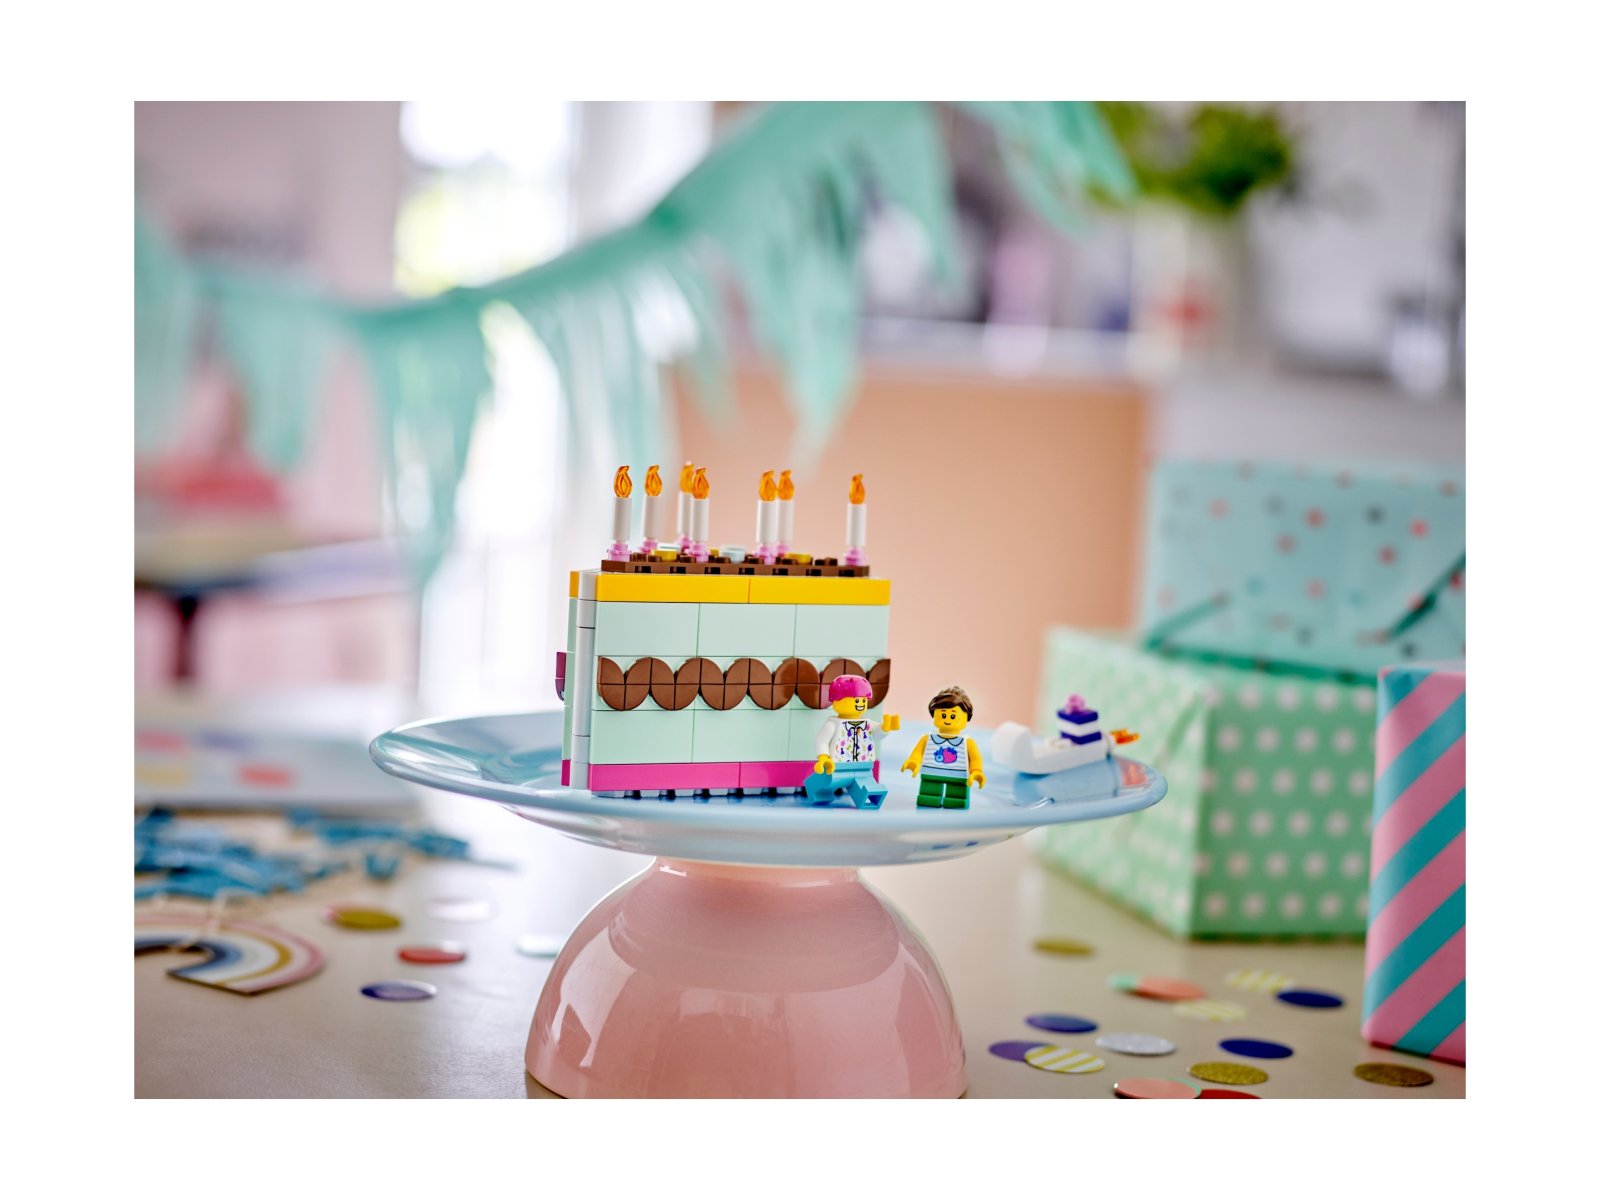 LEGO Tort urodzinowy 40641